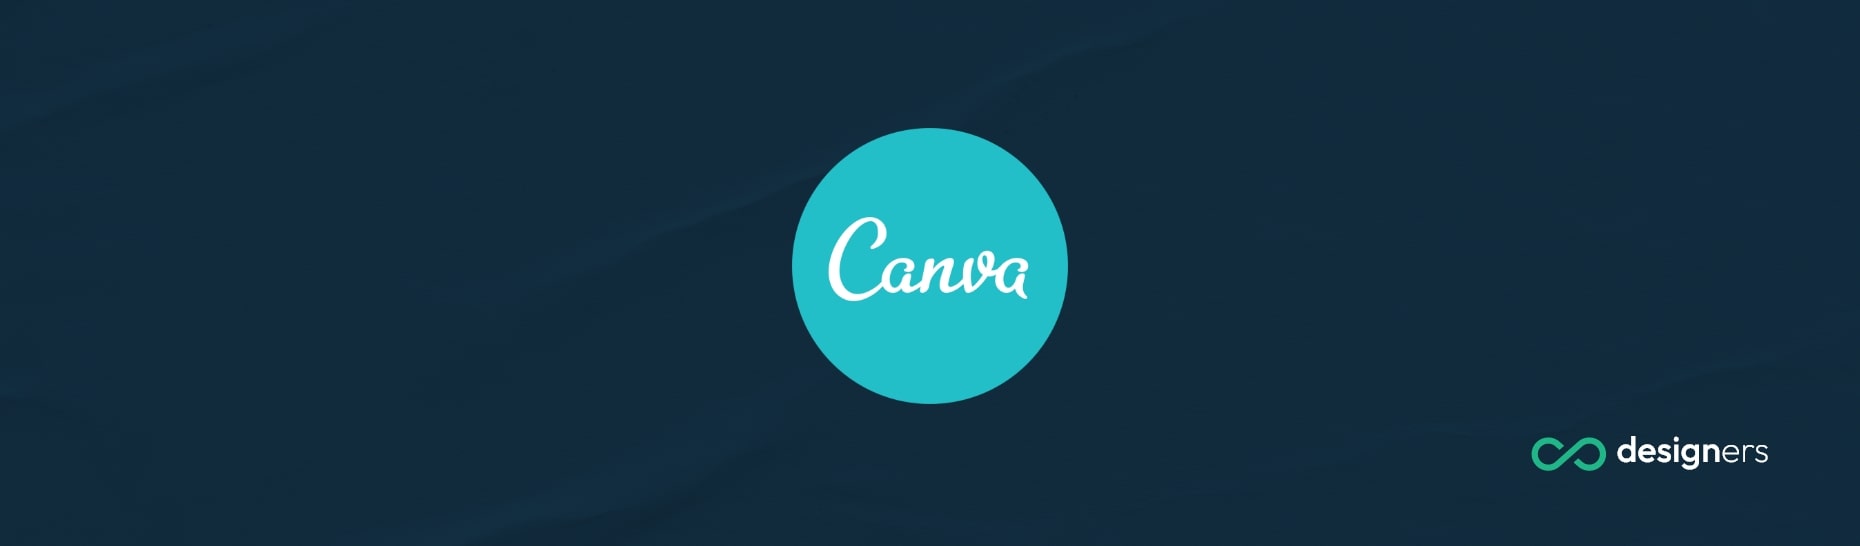 Are Canva Profiles Public?